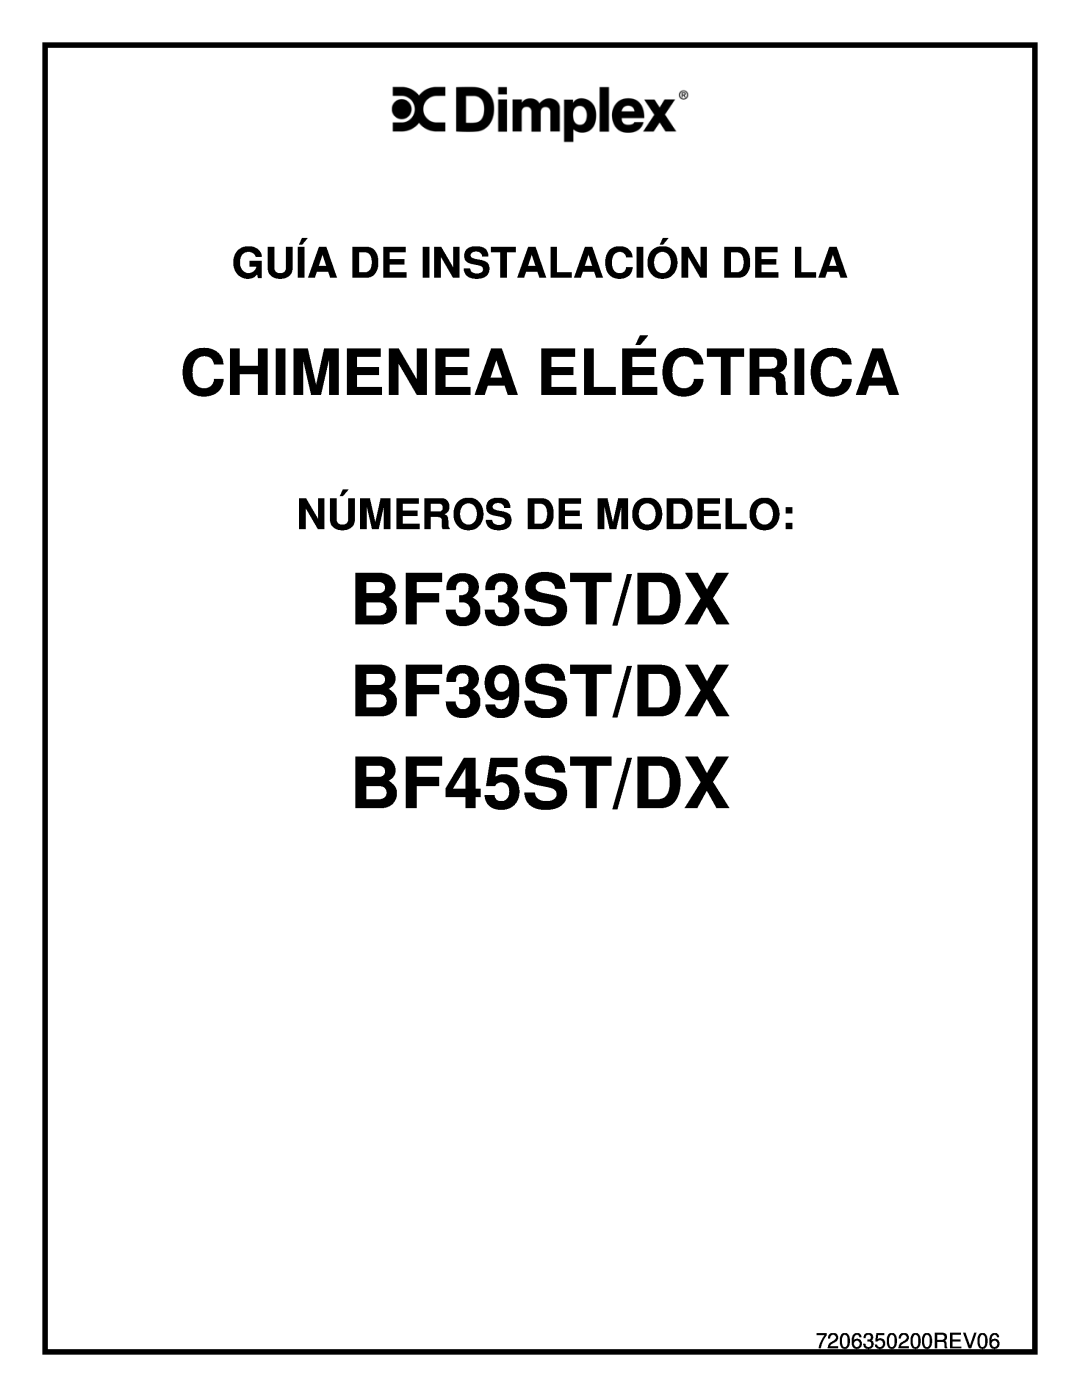 Dimplex manual BF33ST/DX BF39ST/DX BF45ST/DX, Chimenea Eléctrica, Guía De Instalación De La, Números De Modelo 